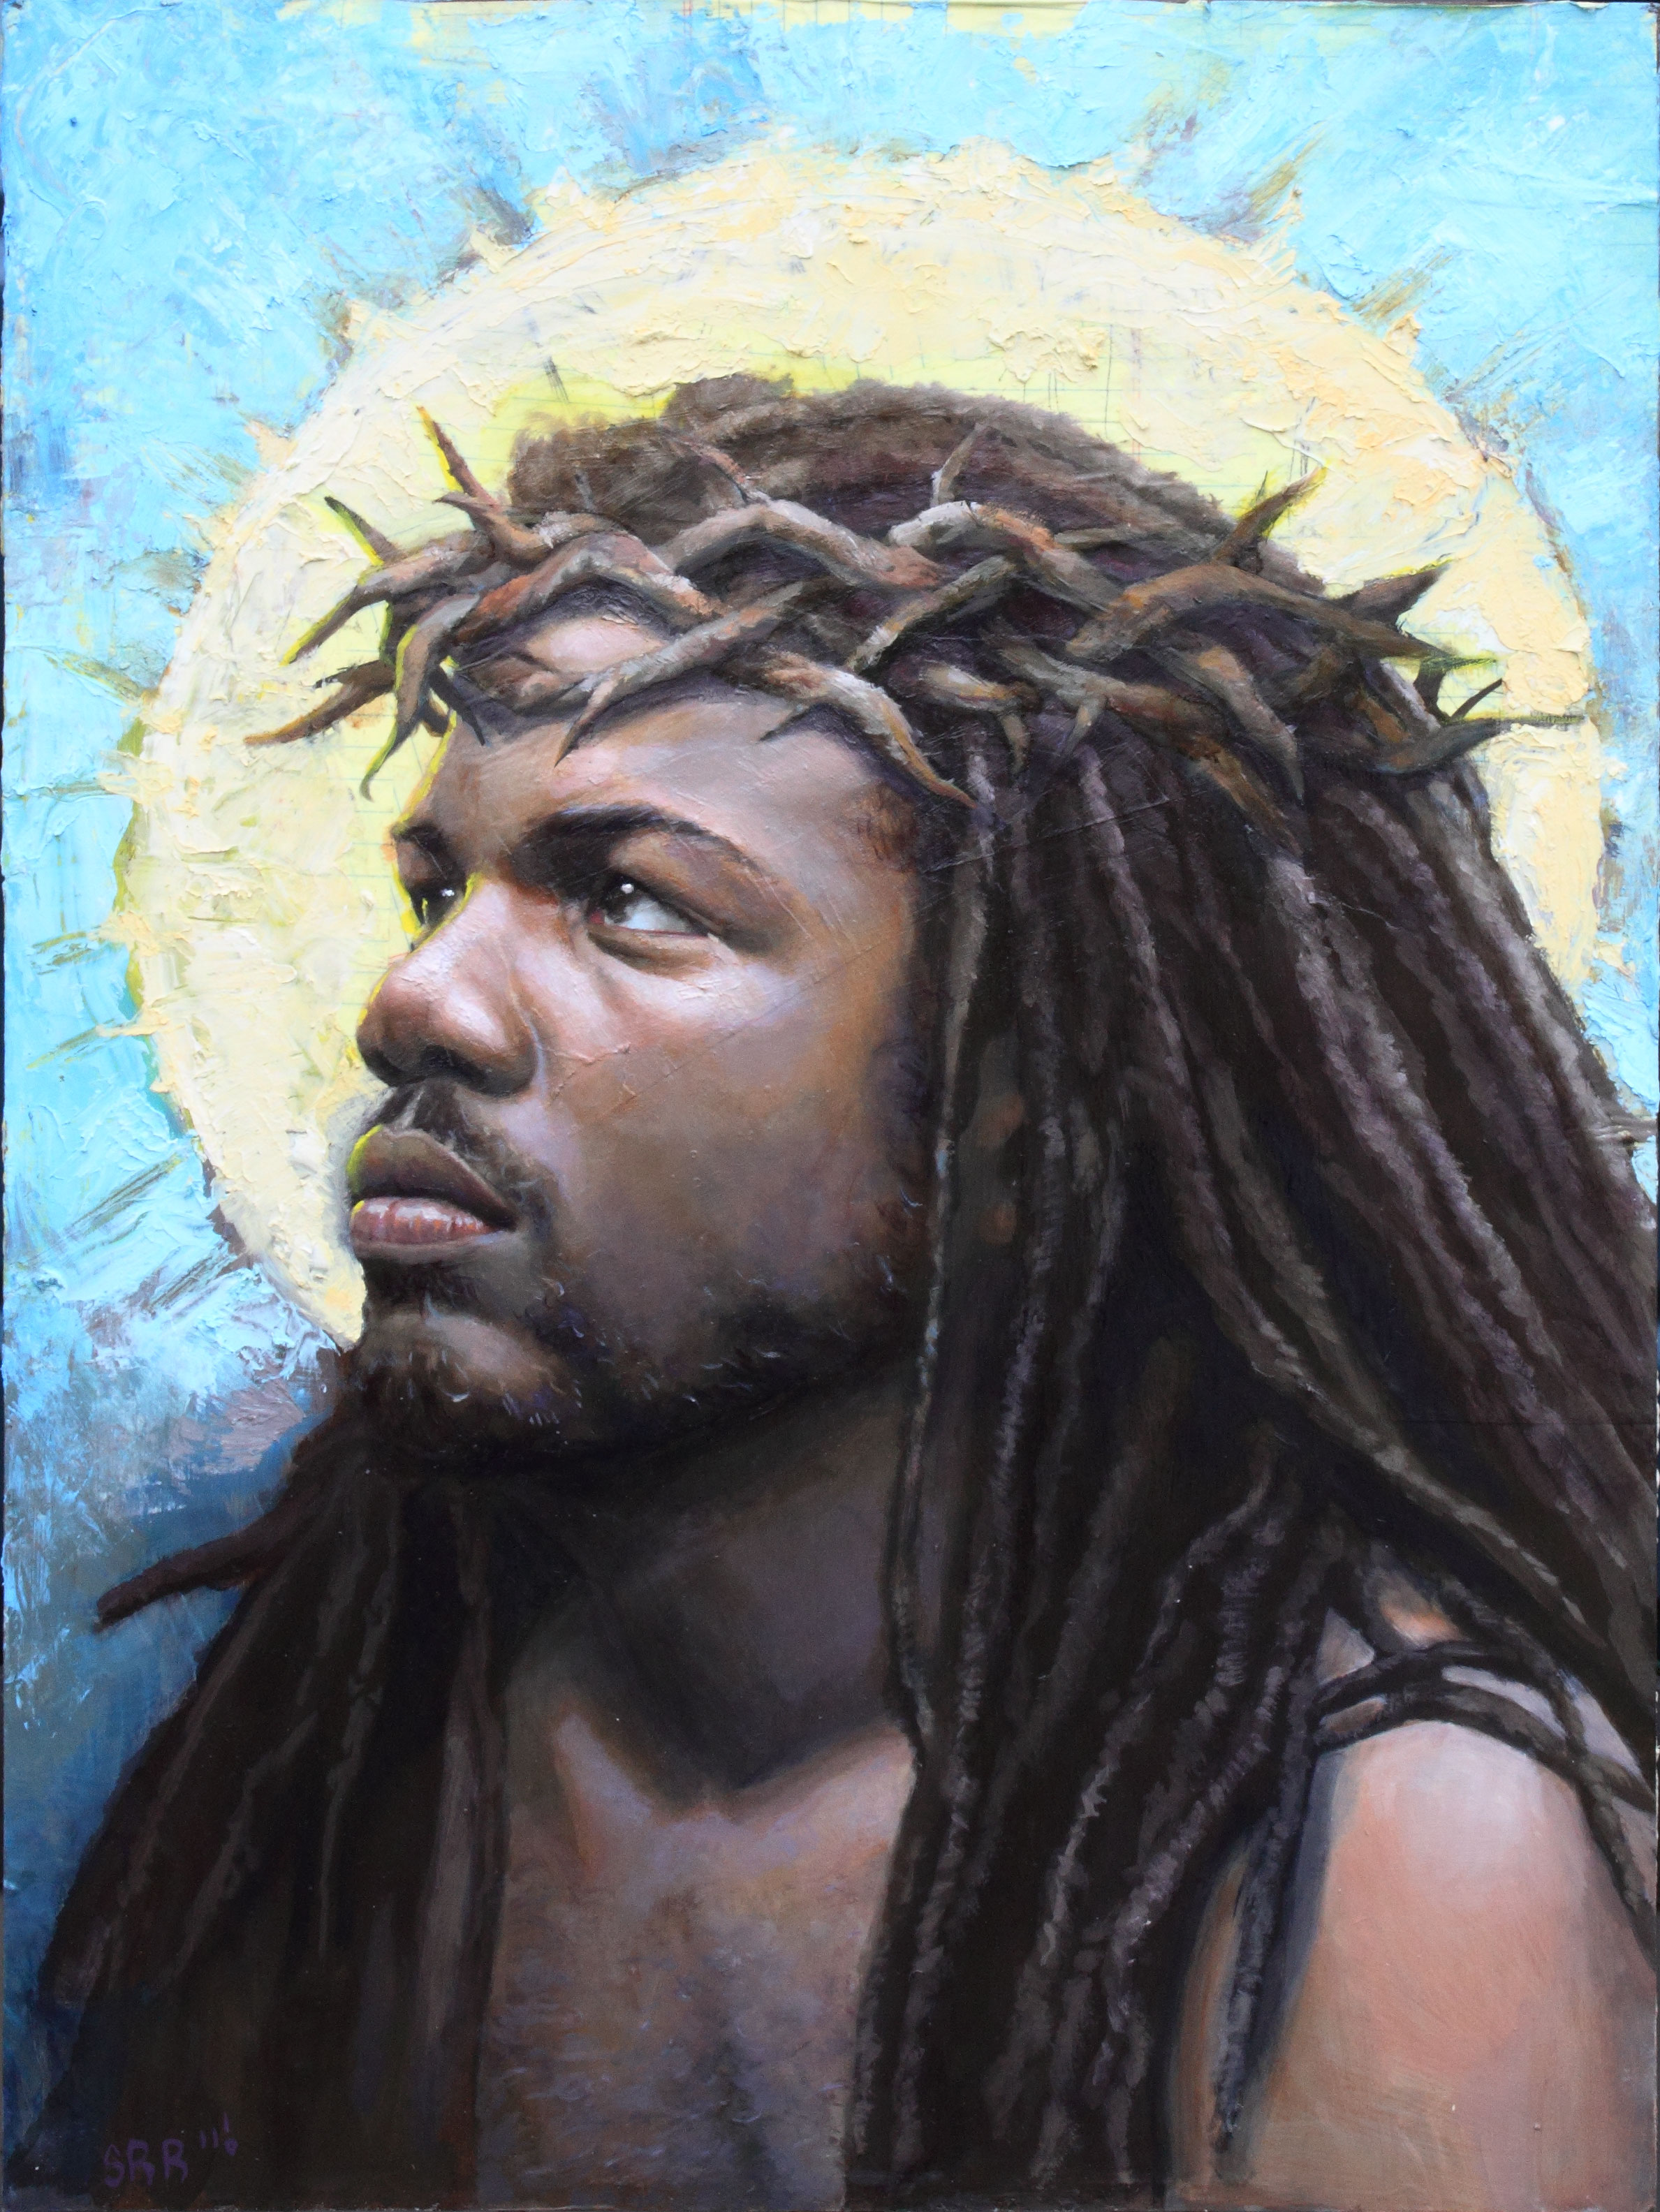 Quebrando mitos: vocÃª sabia que Jesus era negro?